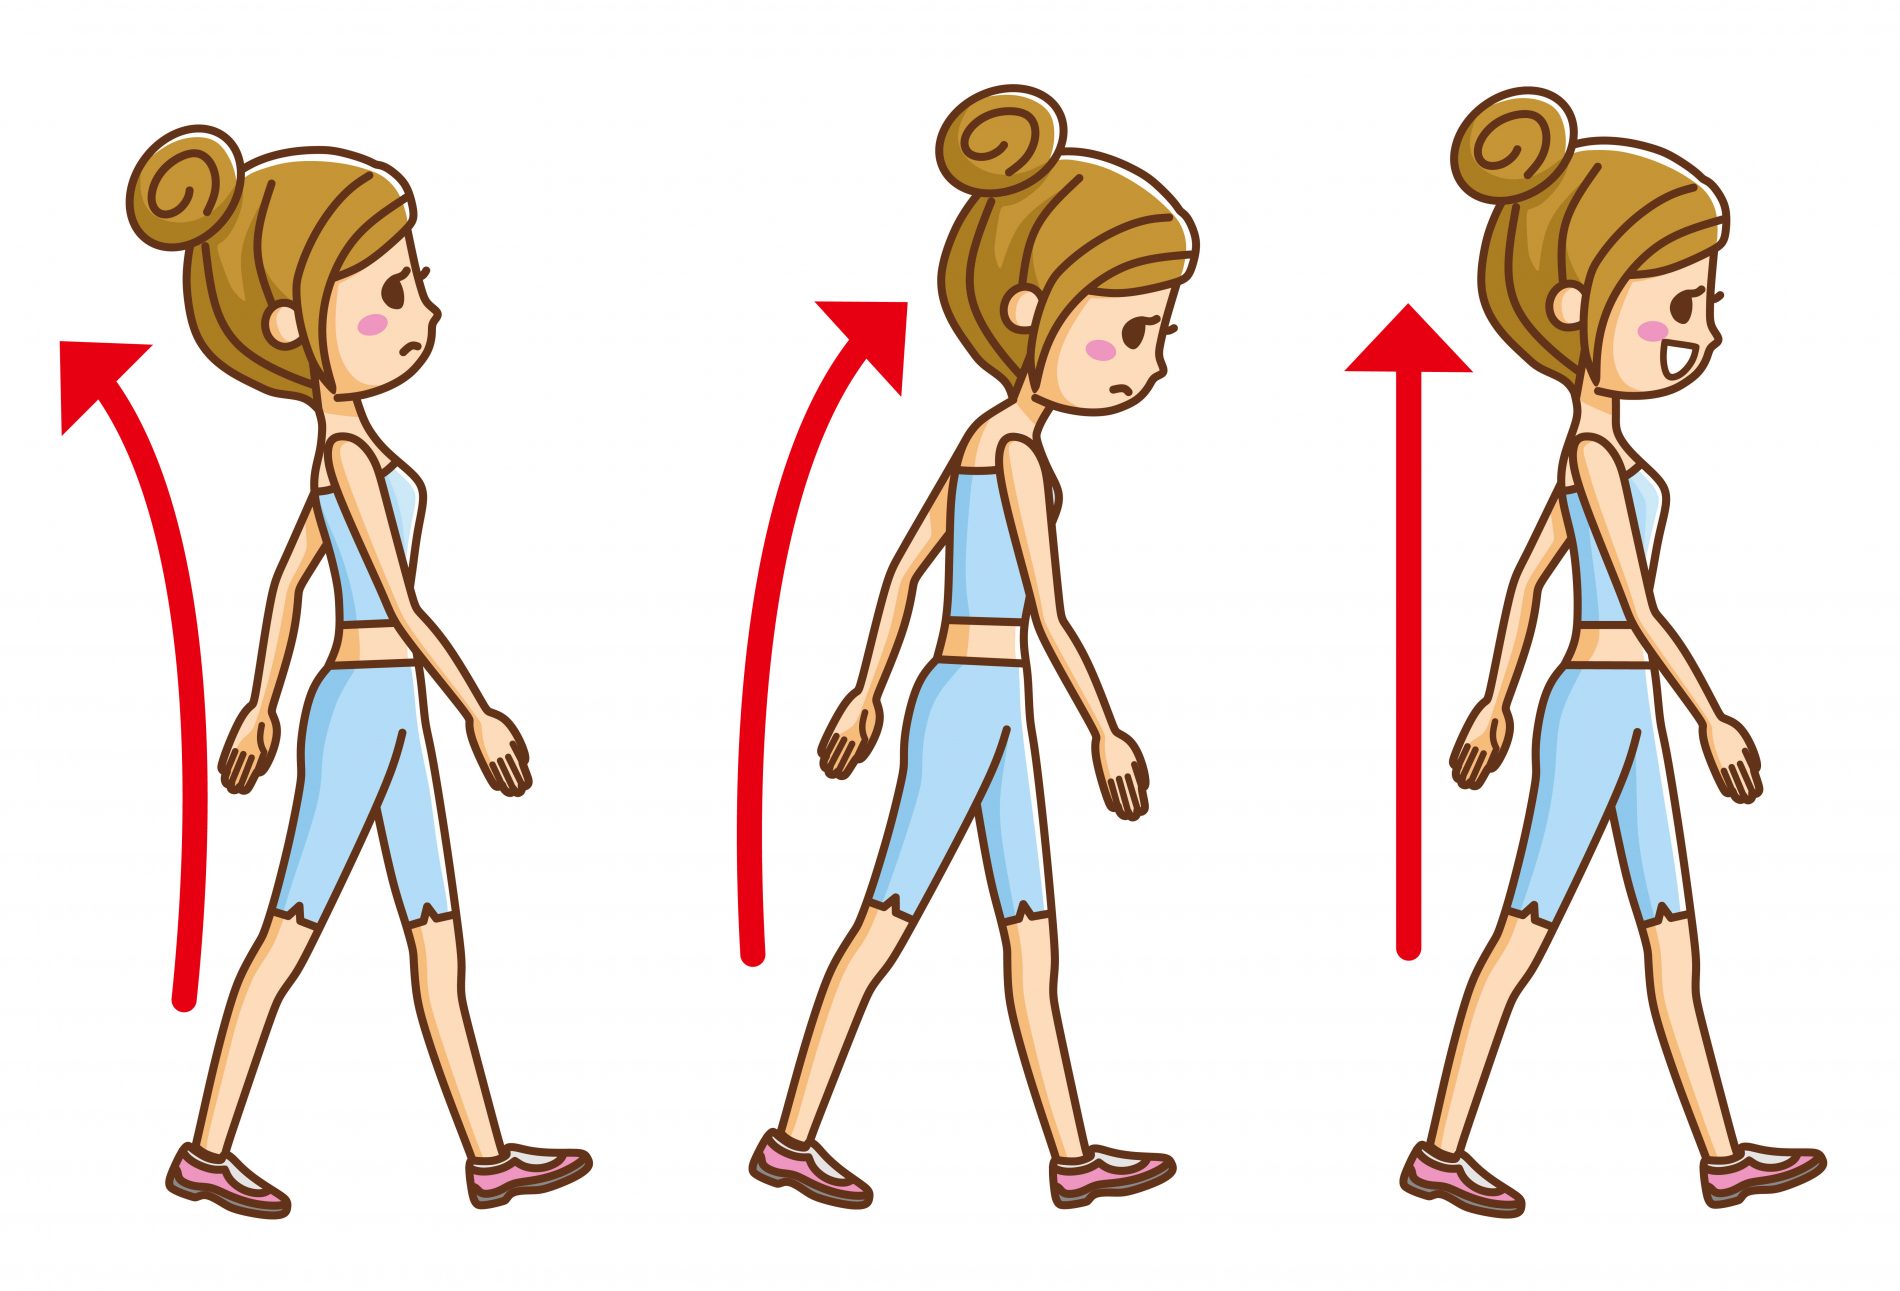 Per dimagrire camminando fai attenzione alla postura